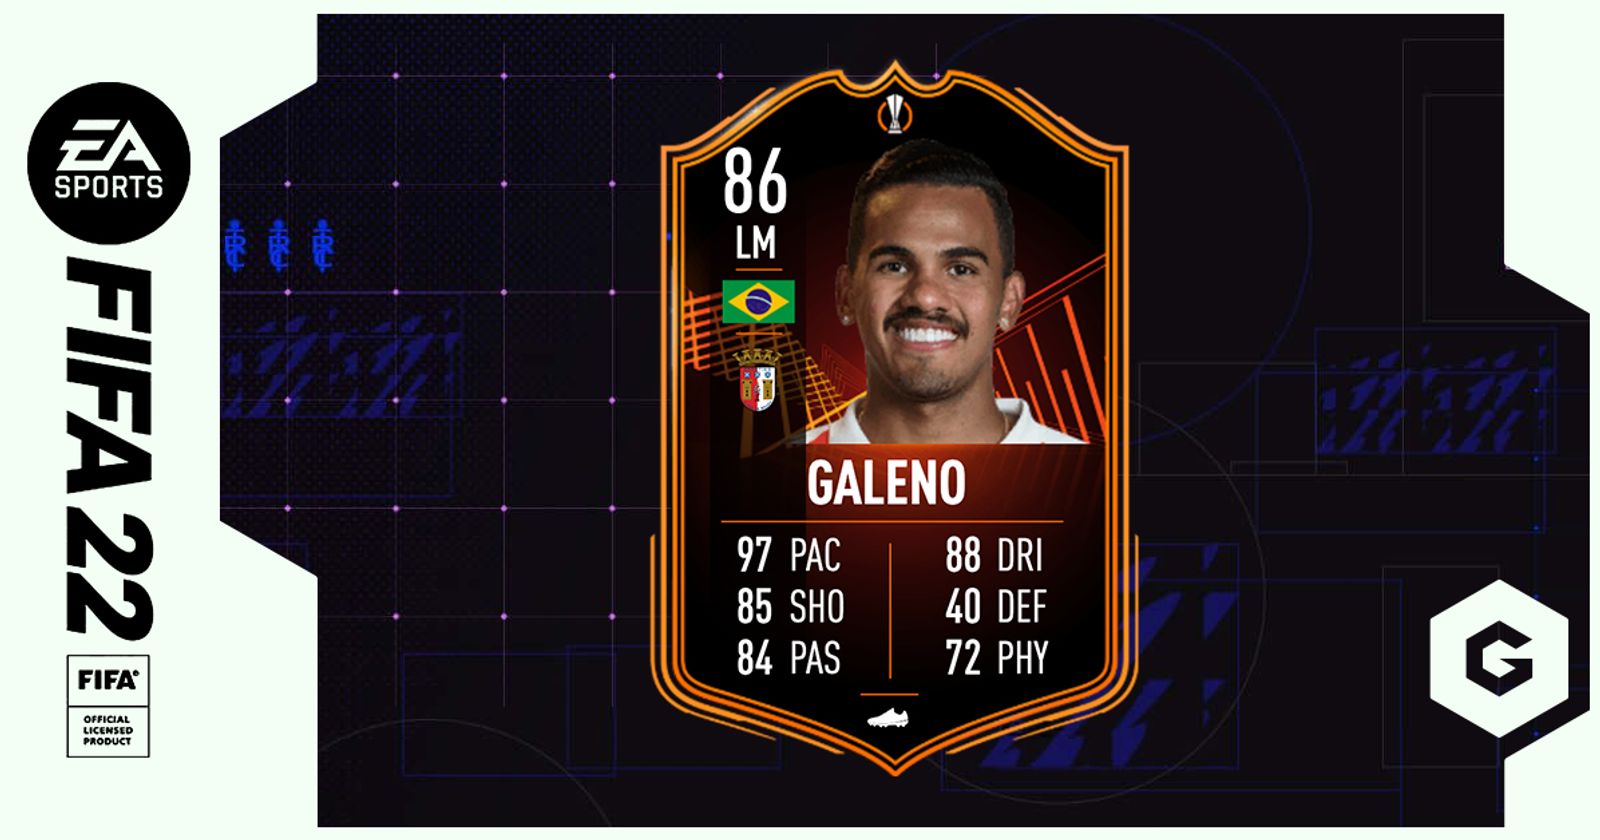 Galeno do Sp. Braga é destaque em FIFA 22